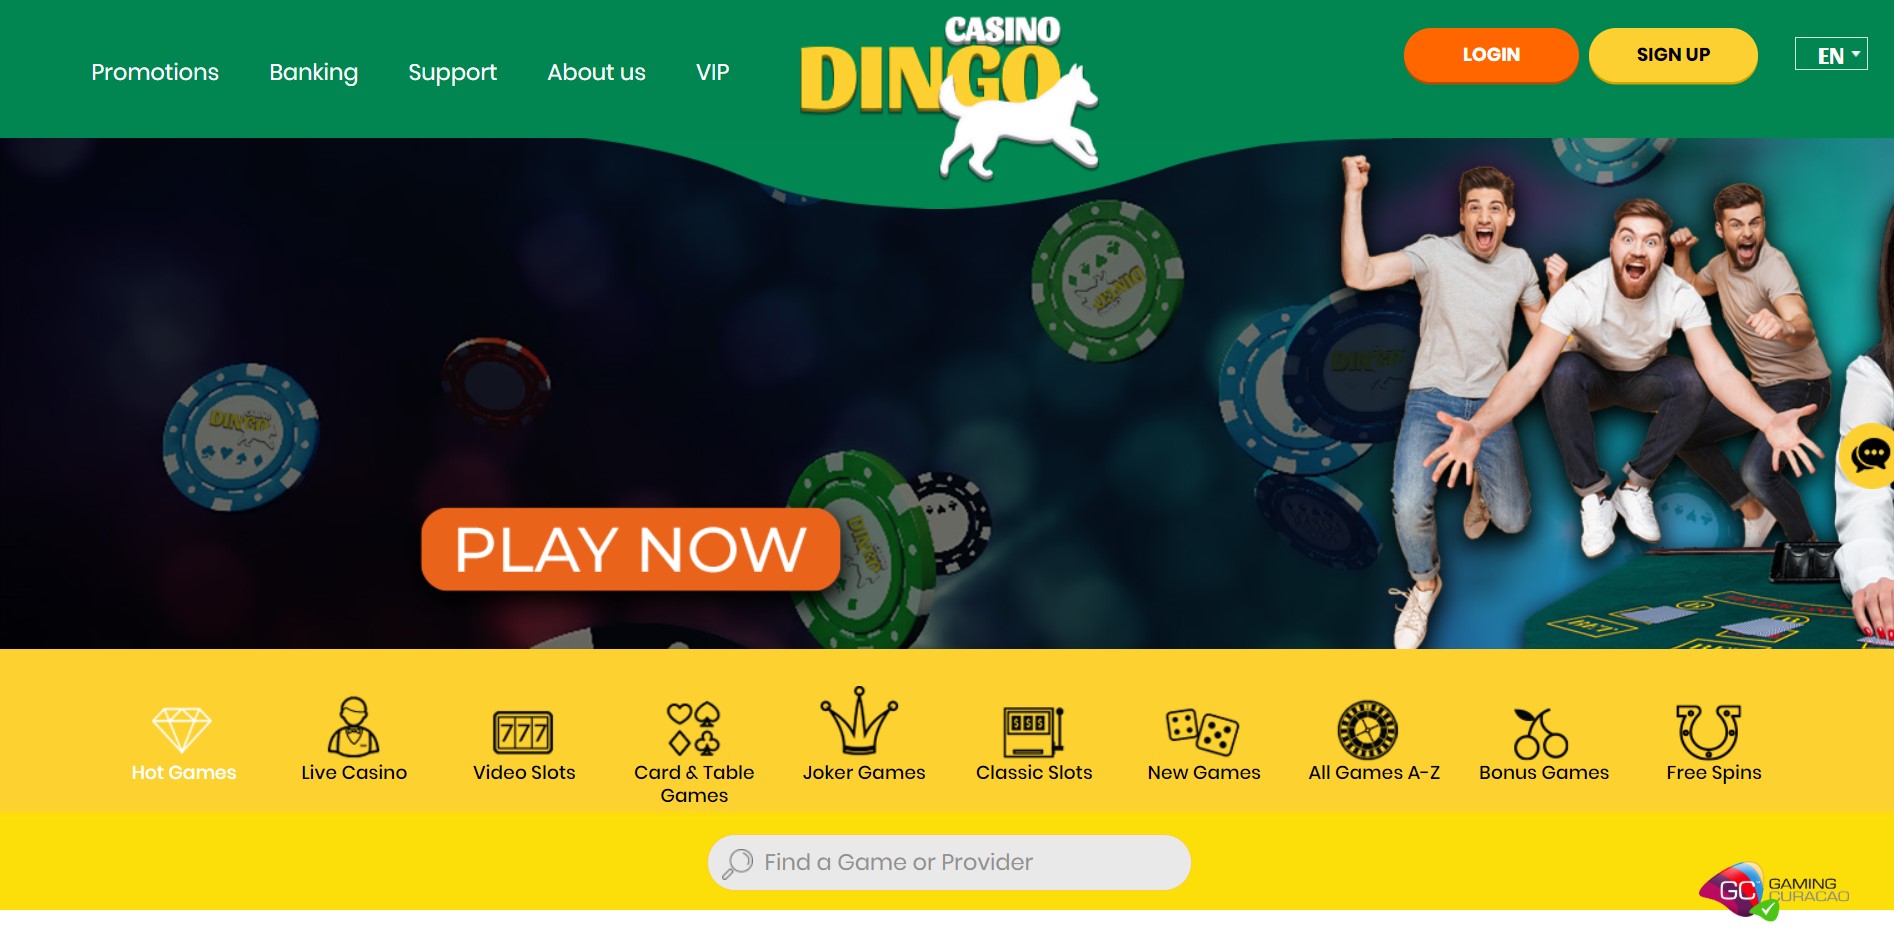 Casino Dingo Play Now